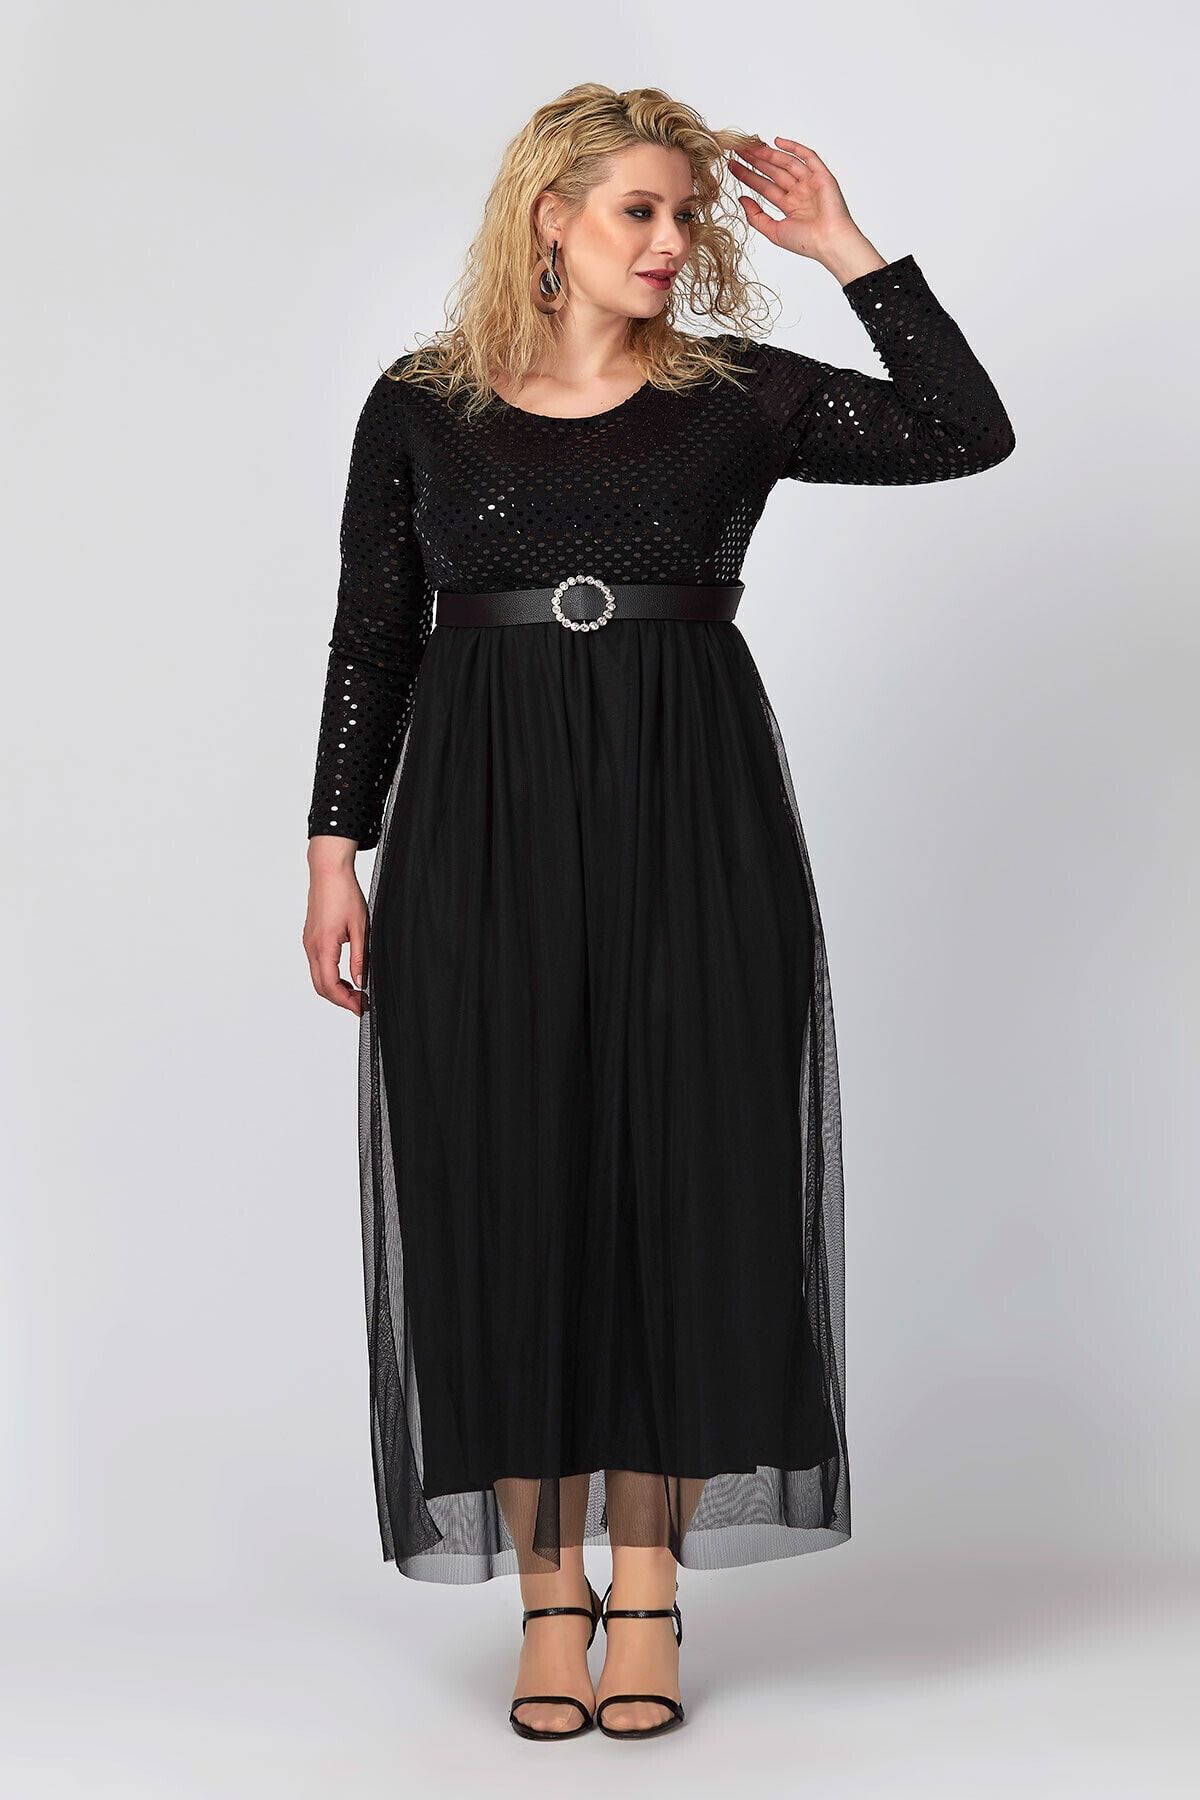 Büyük Moda Kadın Siyah Tül Ve Payet Detaylı Abiye Elbise